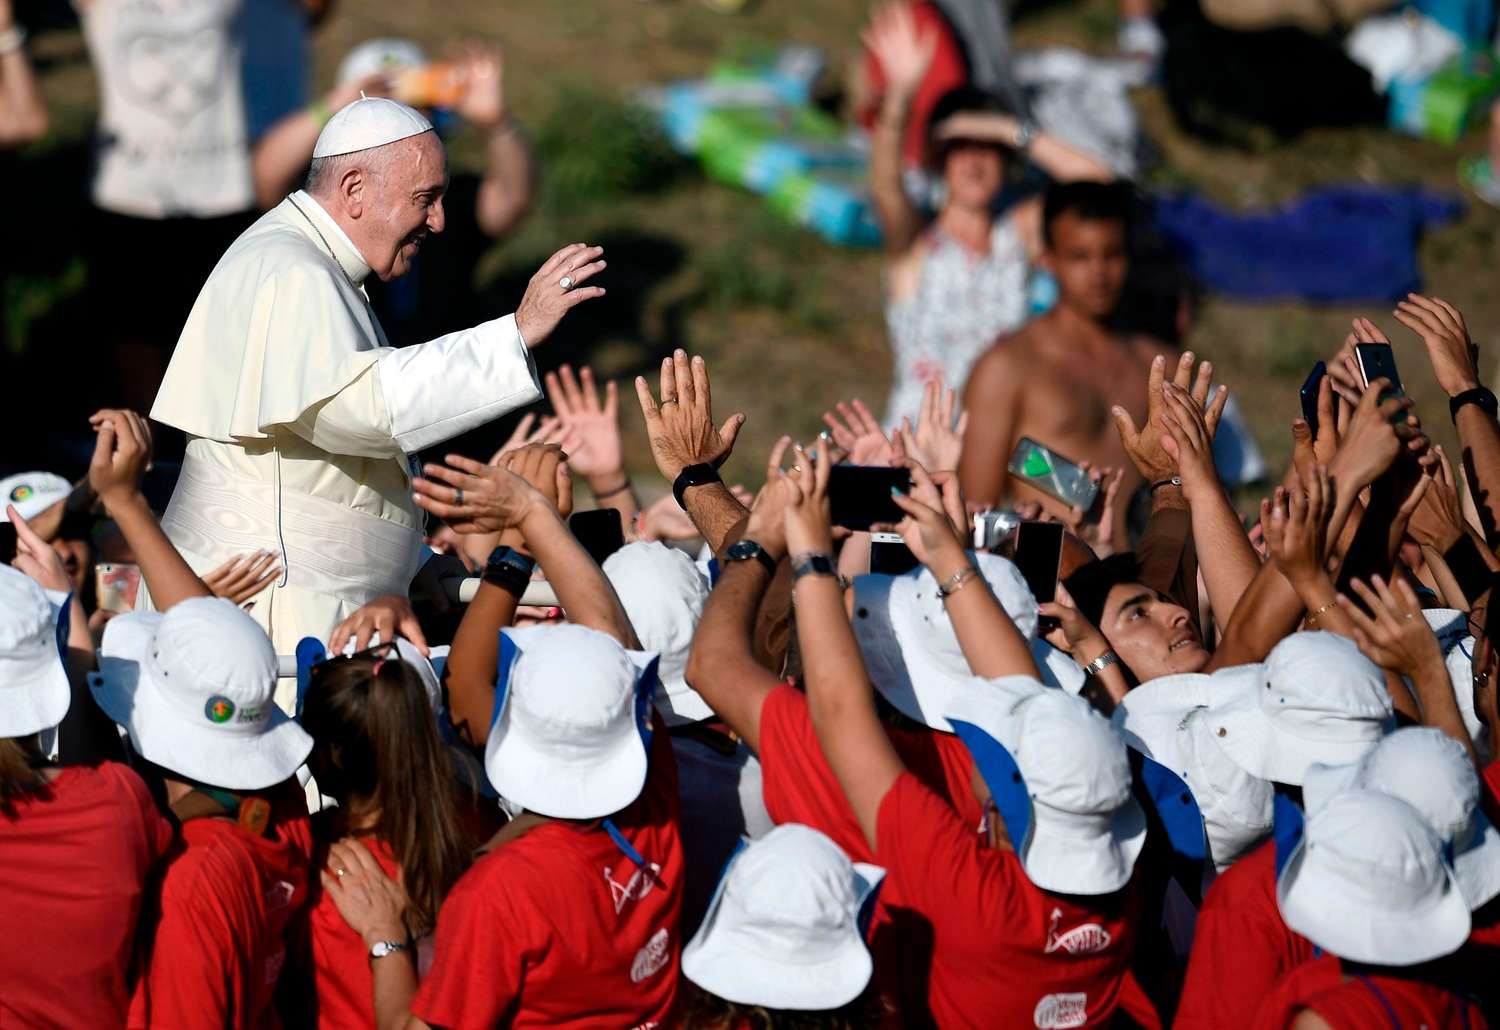 El Papa criticó “la libertad sin límites” ante 70 mil jóvenes